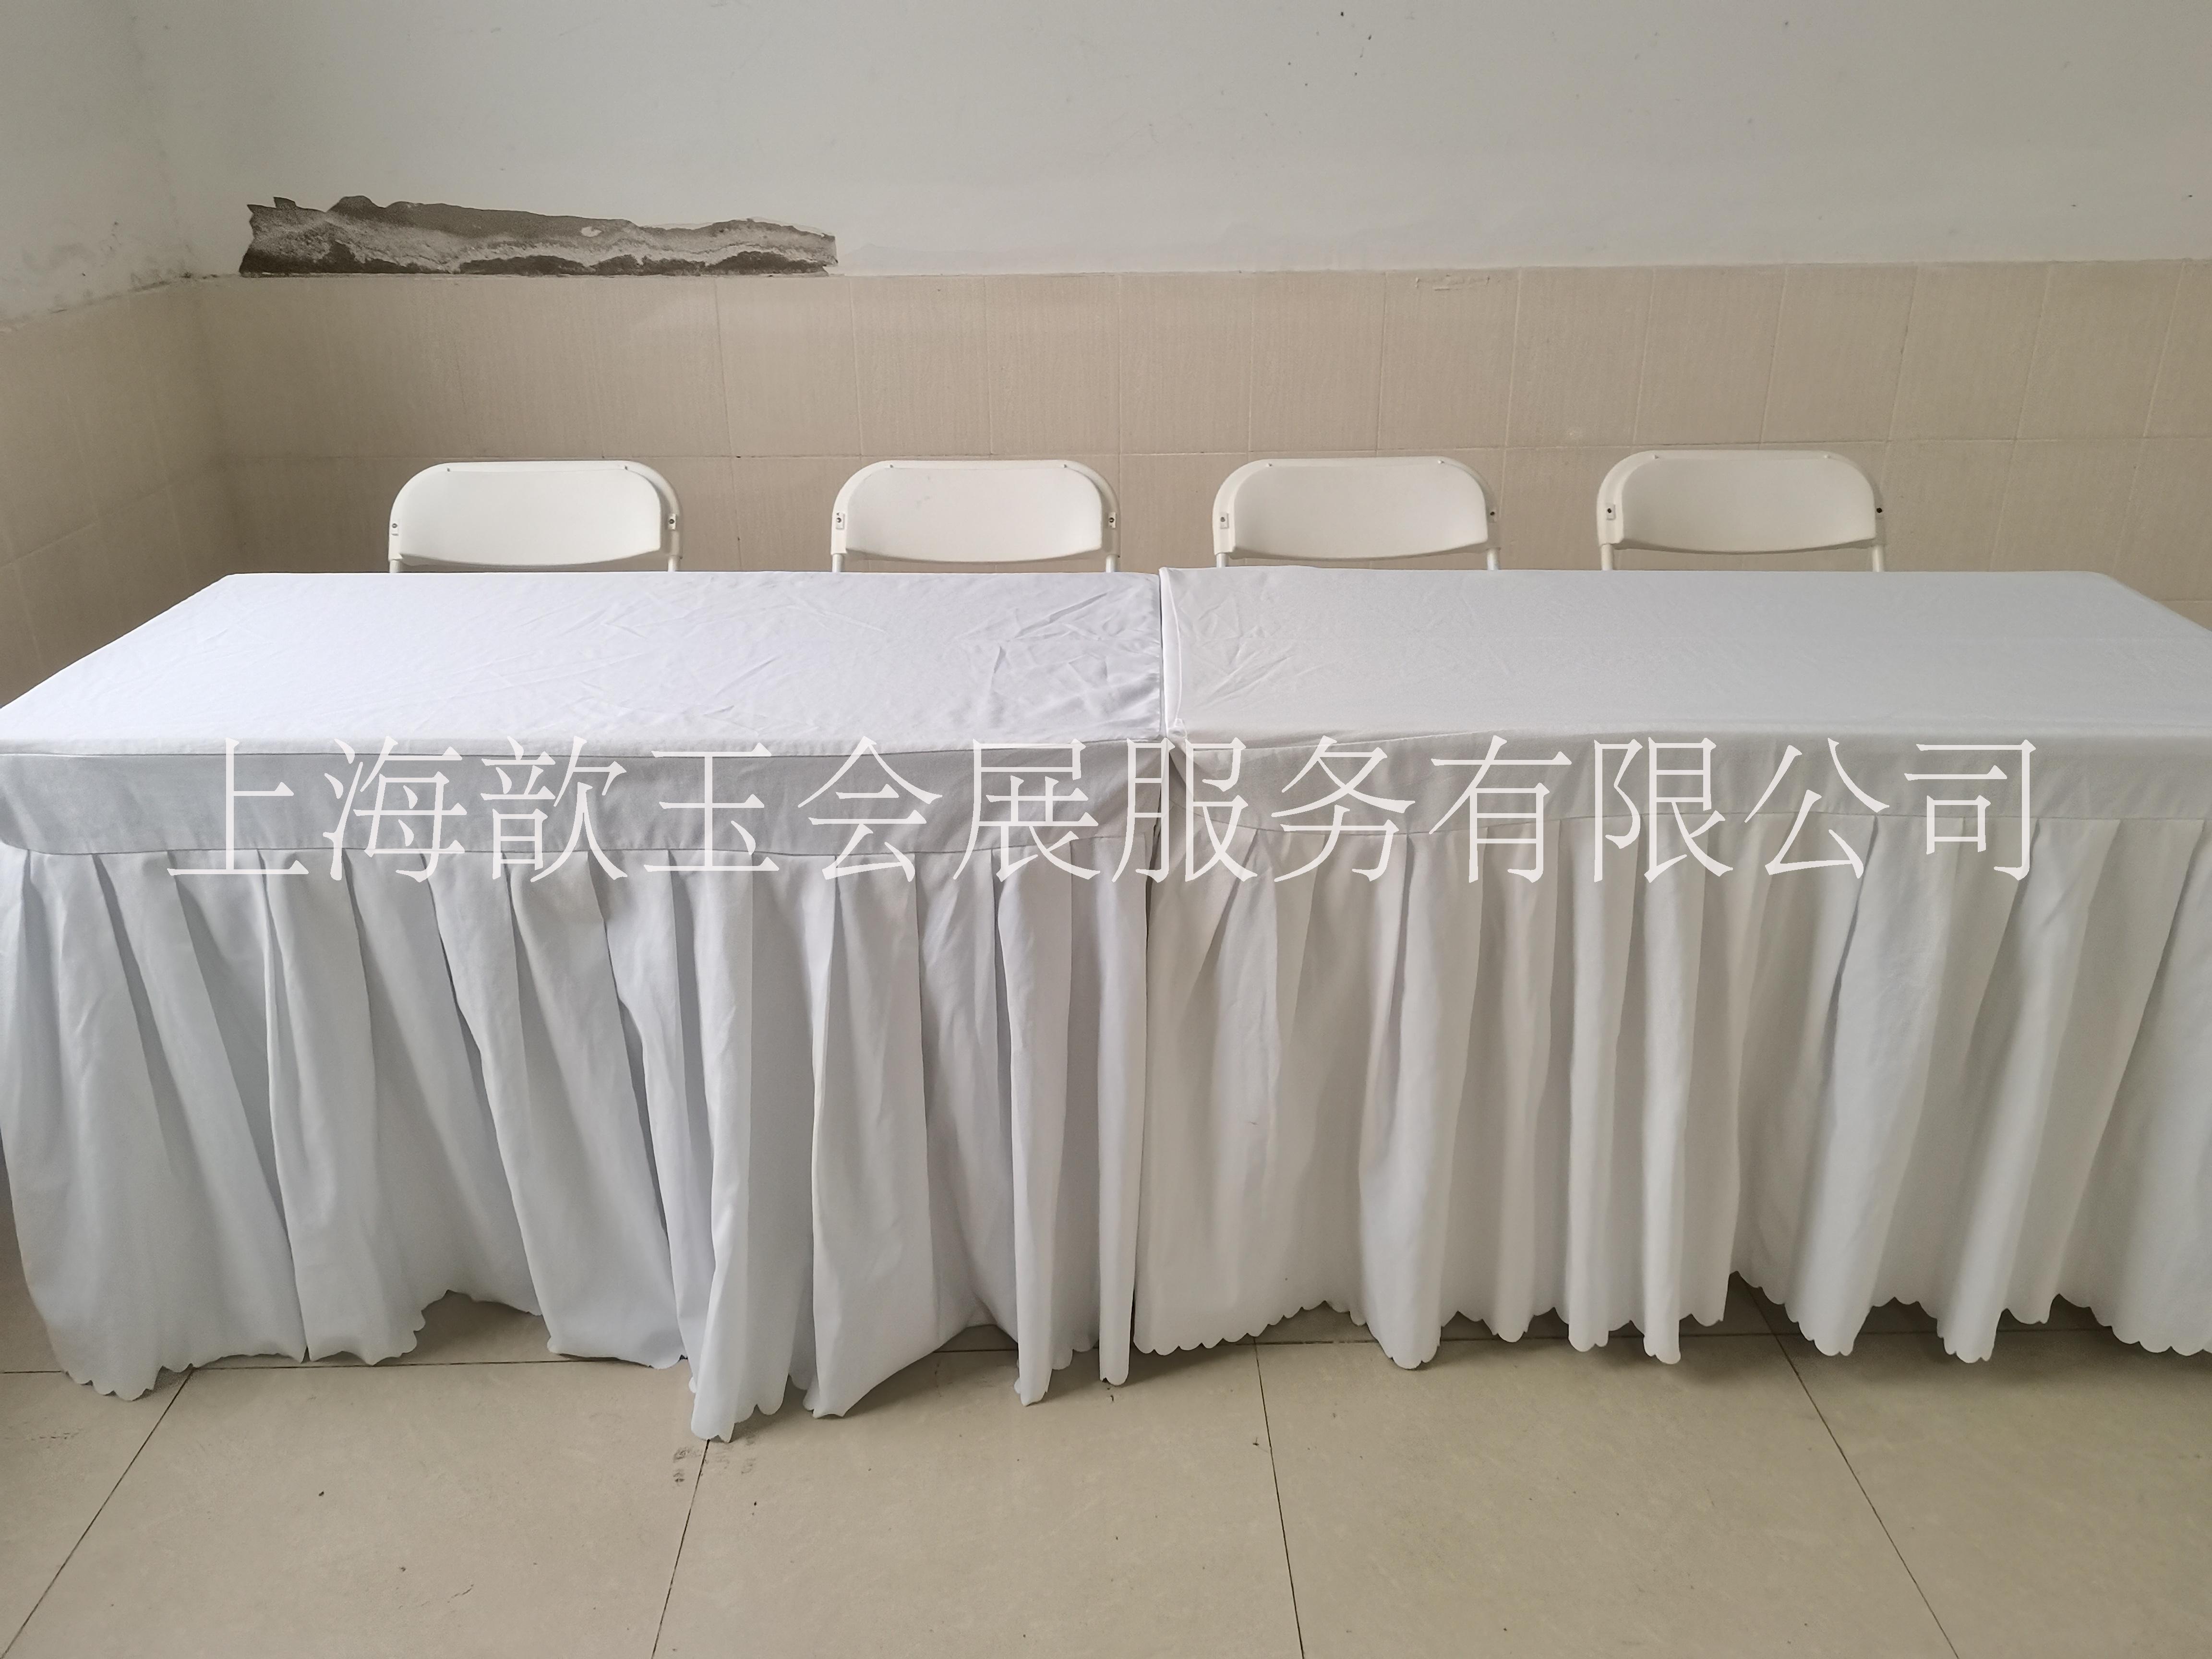 上海折叠桌椅租赁长条桌会议桌出租、IBM桌年会桌椅出租图片